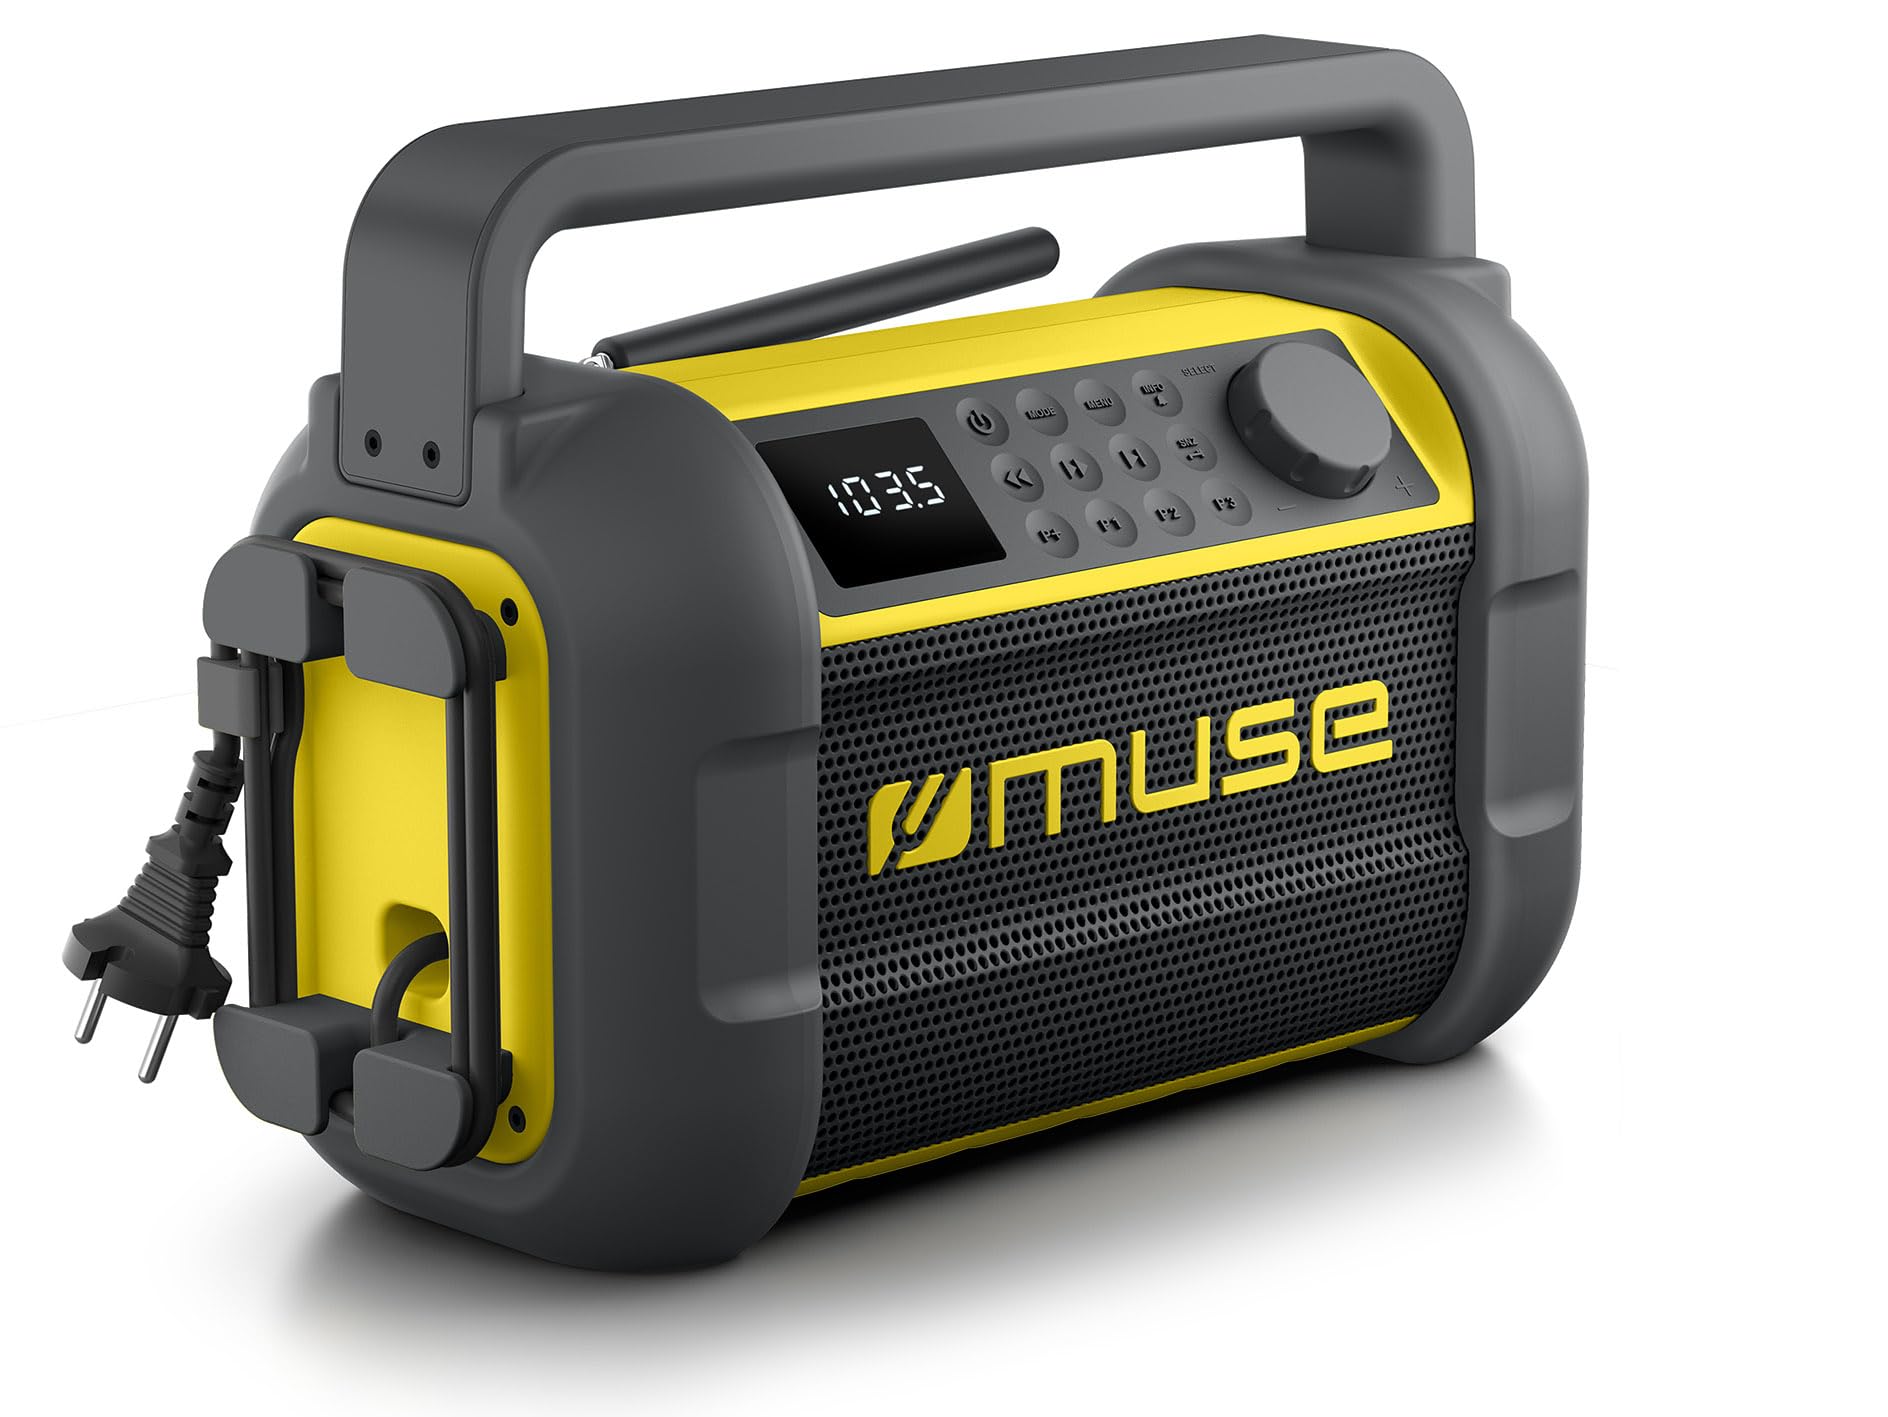 Muse M-928 BTY Baustellenradio, robust, Staub- und spritzwassergeschützt (IP64), mit Bluetooth und UKW Radio, integriertem Ladegerät und USB-C-Anschluss, schwarz-gelb